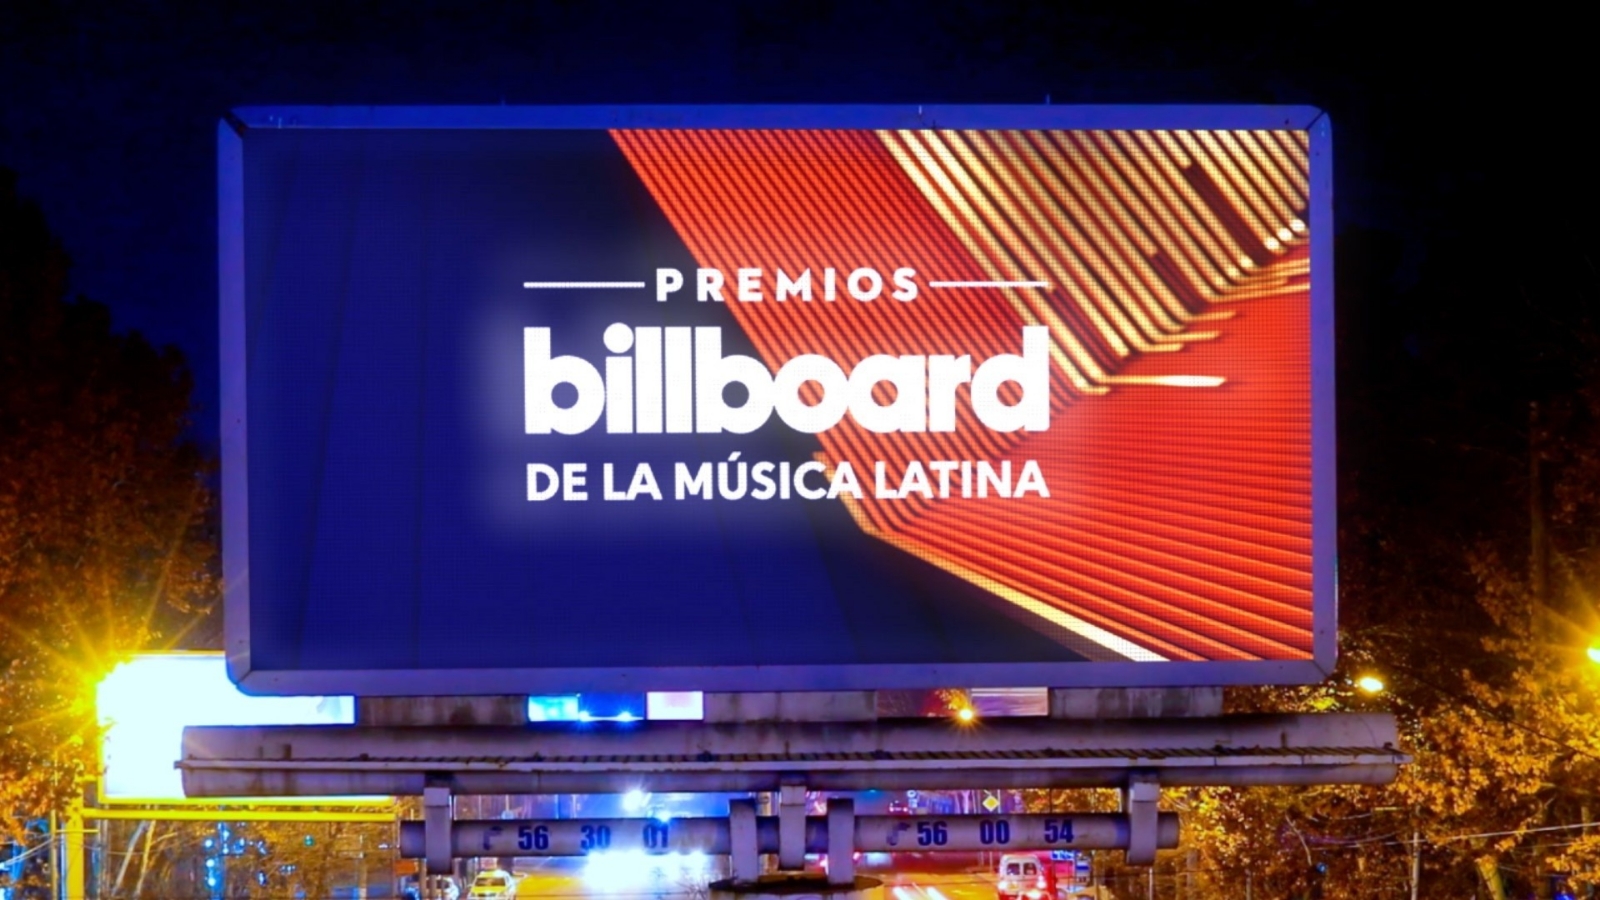 La gala de los premios Billboard de la Música Latina 2022 se celebran este jueves 29 de septiembre, a partir de las 20:00